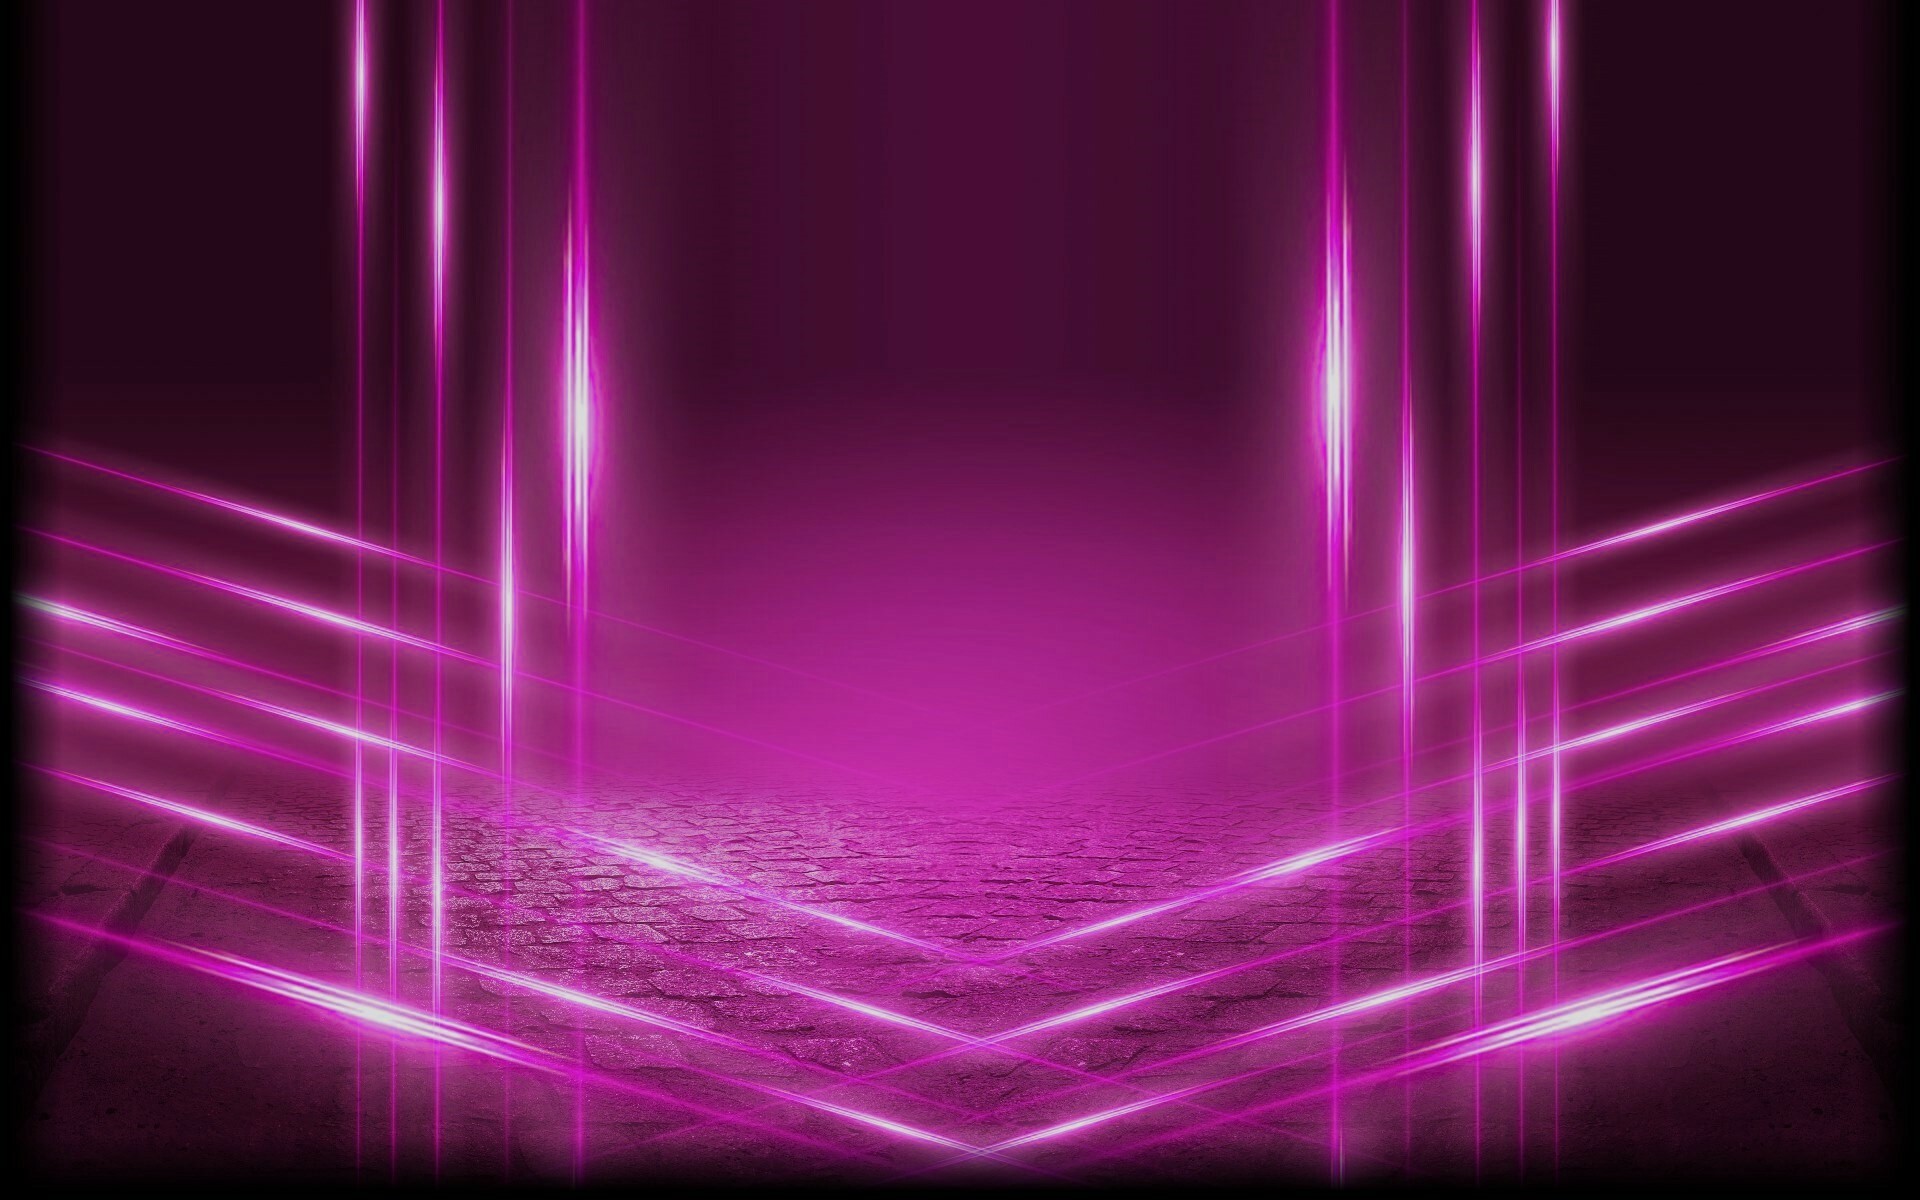 Purple Lights: Màu tím là một trong những màu sắc tỏa sáng và rực rỡ nhất của quang cảnh đêm. Hãy khám phá hình ảnh những ánh đèn tím phản chiếu trên mặt nước, tạo nên một không gian đầy màu sắc và phù hợp cho những bức ảnh sống động và đẹp mắt.